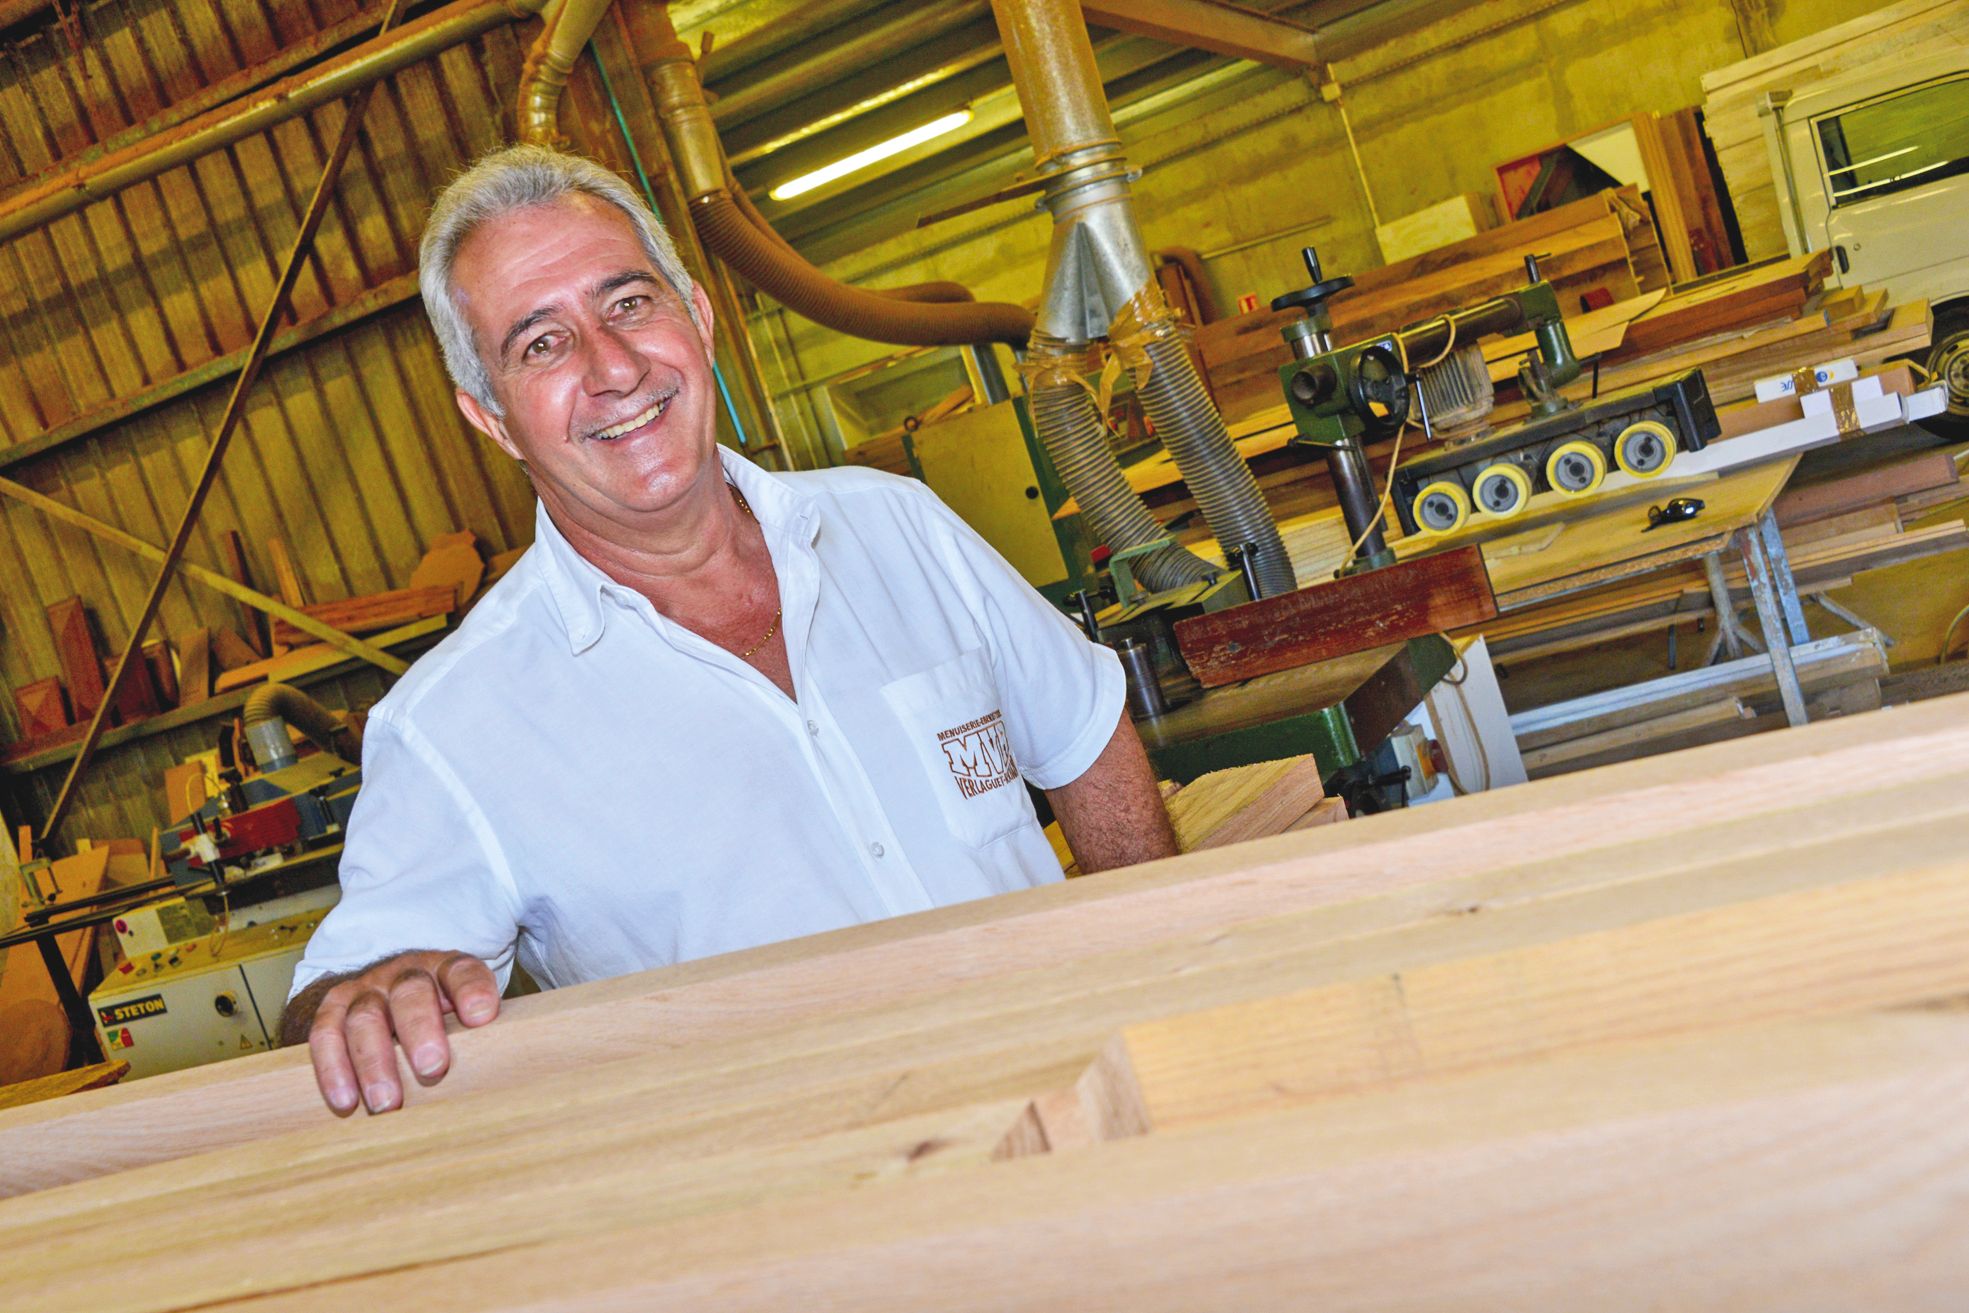 Amoureux du bois, Guy Verlaguet a fait de sa passion son métier. Un savoir-faire qu’il transmet depuis maintenant 25 ans au sein de différents organismes de formation du pays.